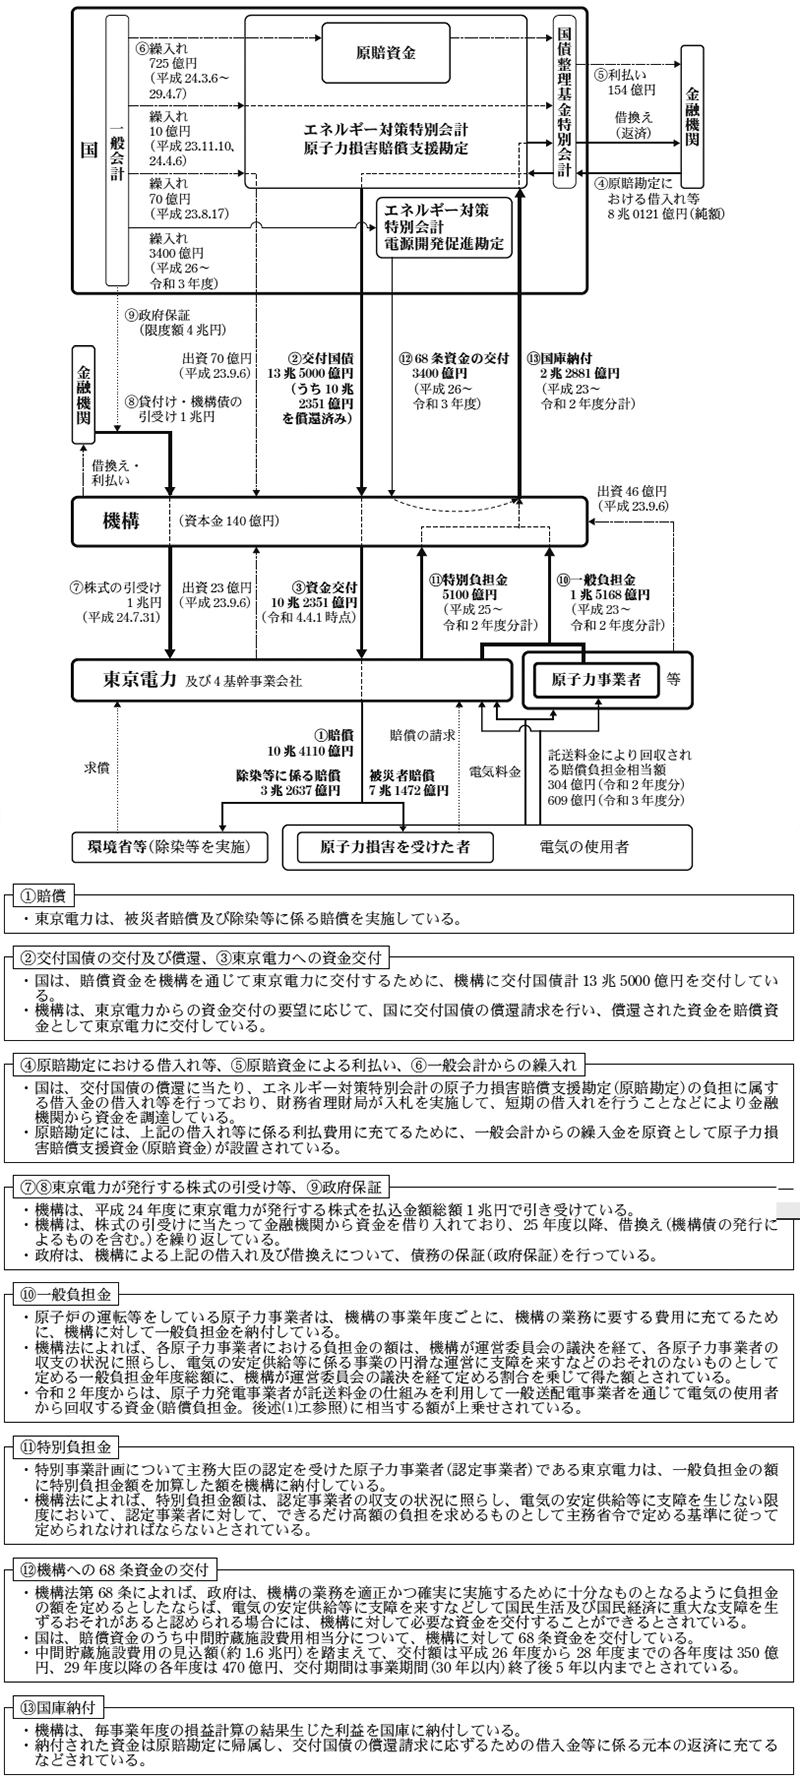 国の機構に対する財政上の措置、東京電力に交付した資金の回収等の仕組みについて